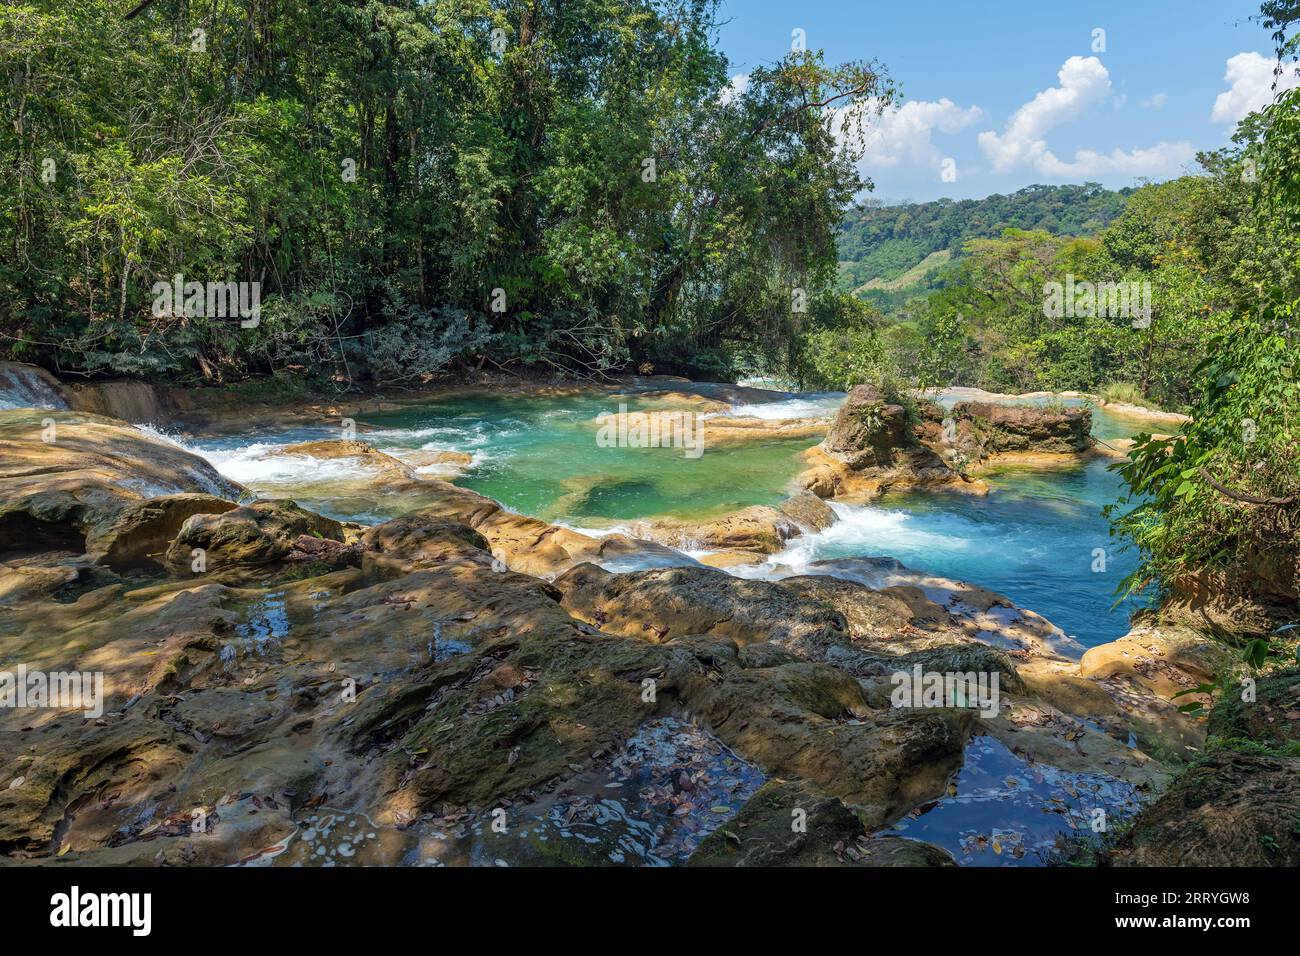 Cascades d'Agua Azul avec forêt tropicale humide et eaux turquoises près de Palenque, Chiapas, Mexique. Banque D'Images